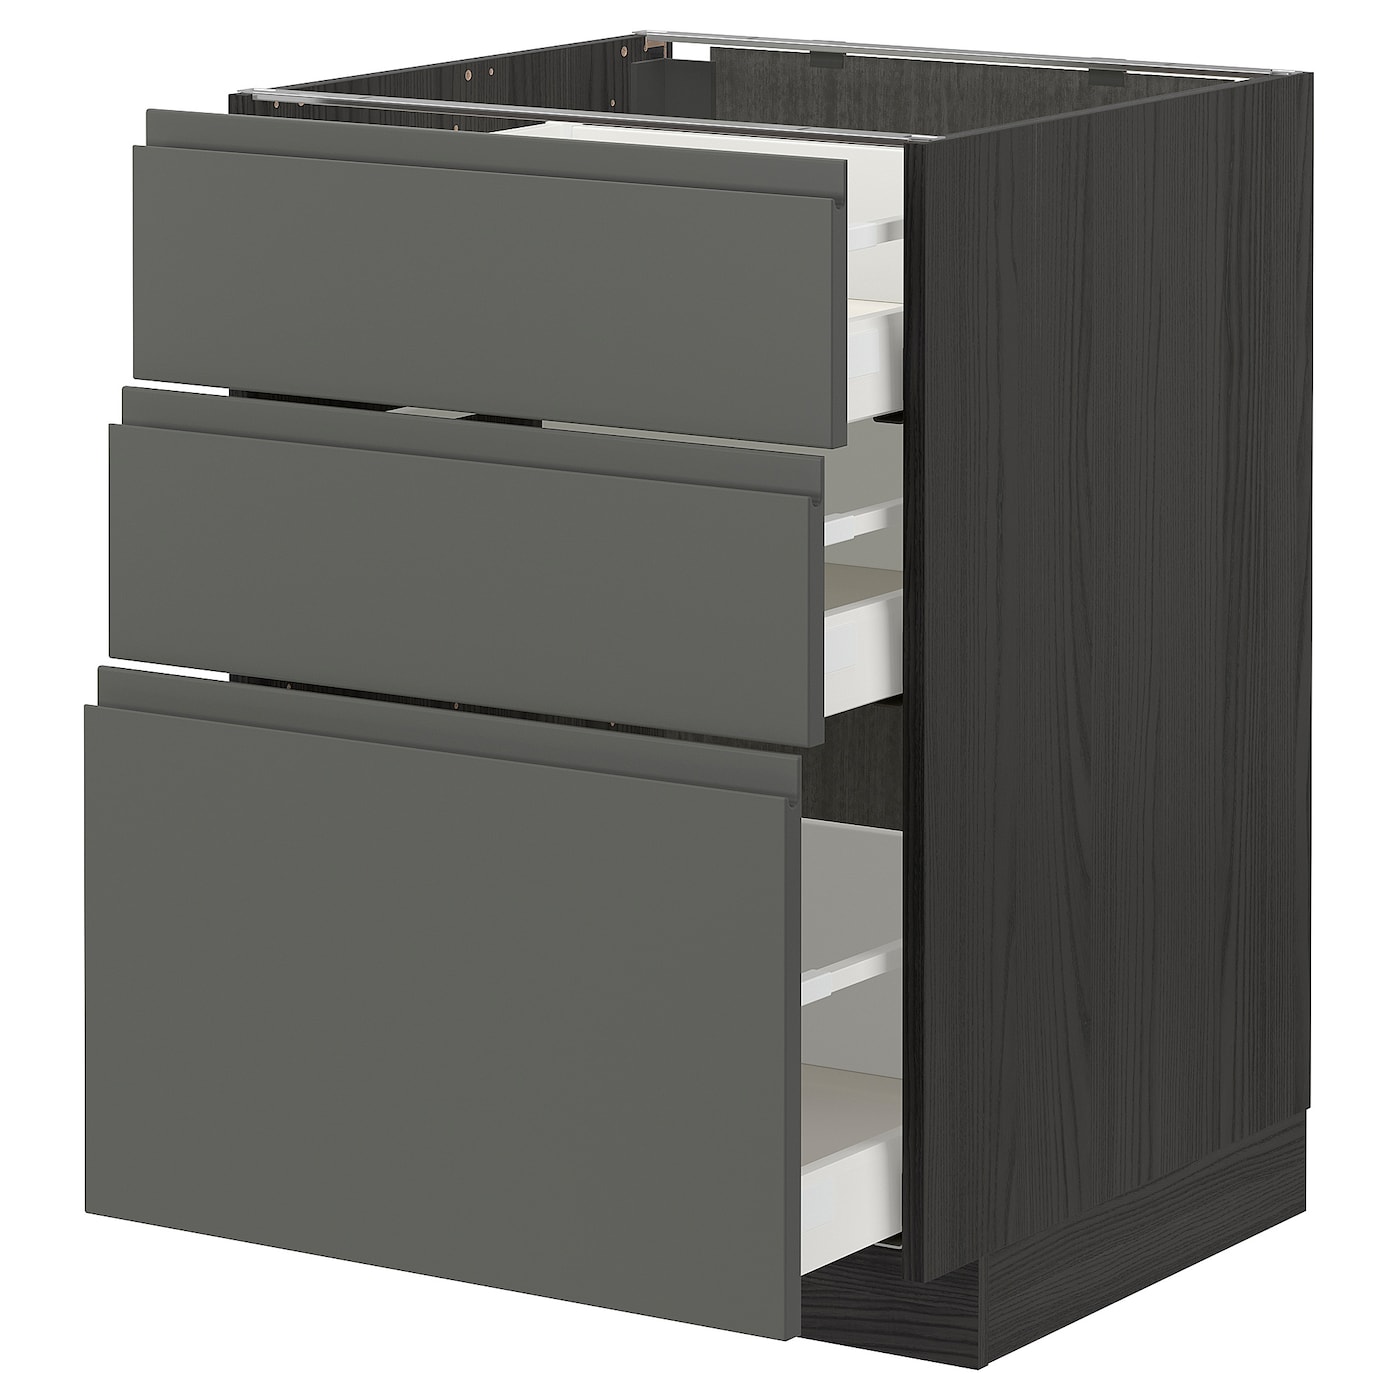 Напольный кухонный шкаф - IKEA METOD MAXIMERA, 88x62x60см, темно-серый/серый, МЕТОД МАКСИМЕРА ИКЕА